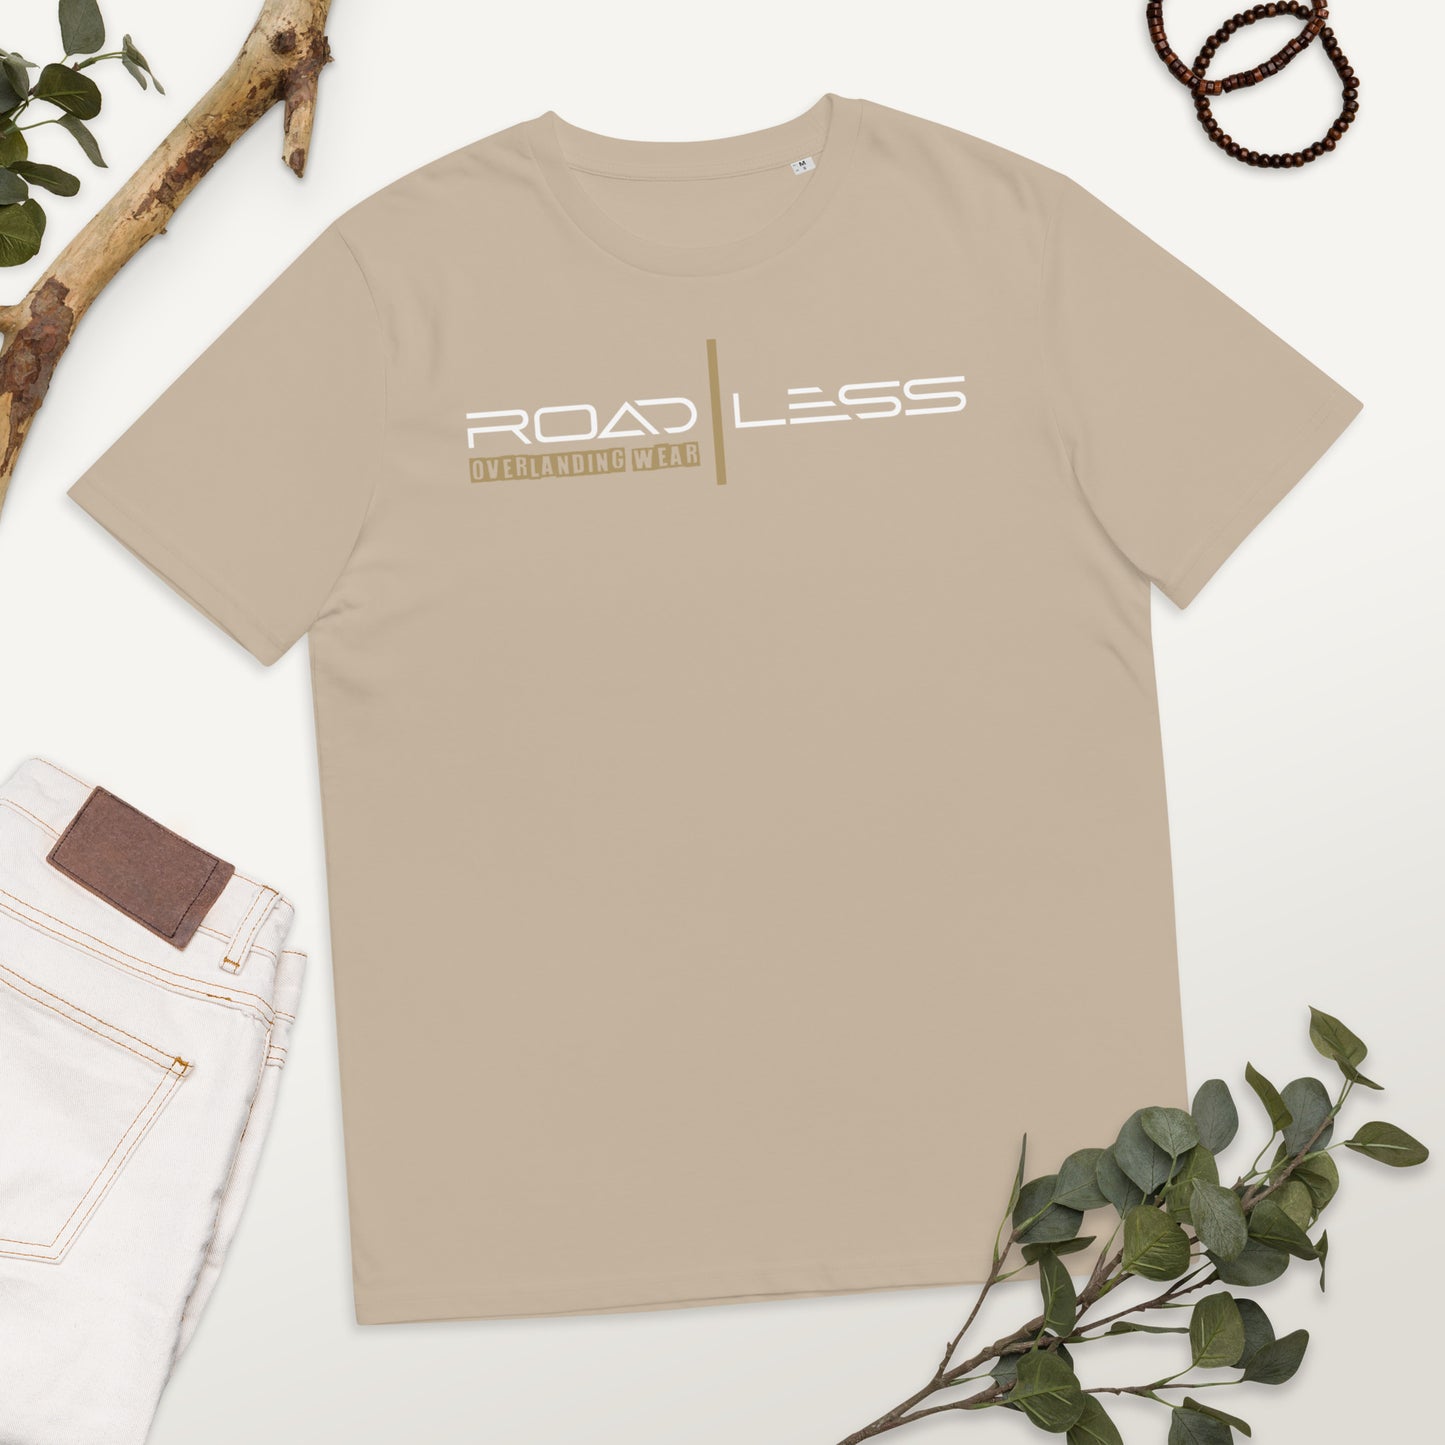 Unisex-Bio-Baumwoll-T-Shirt (Road Less white)